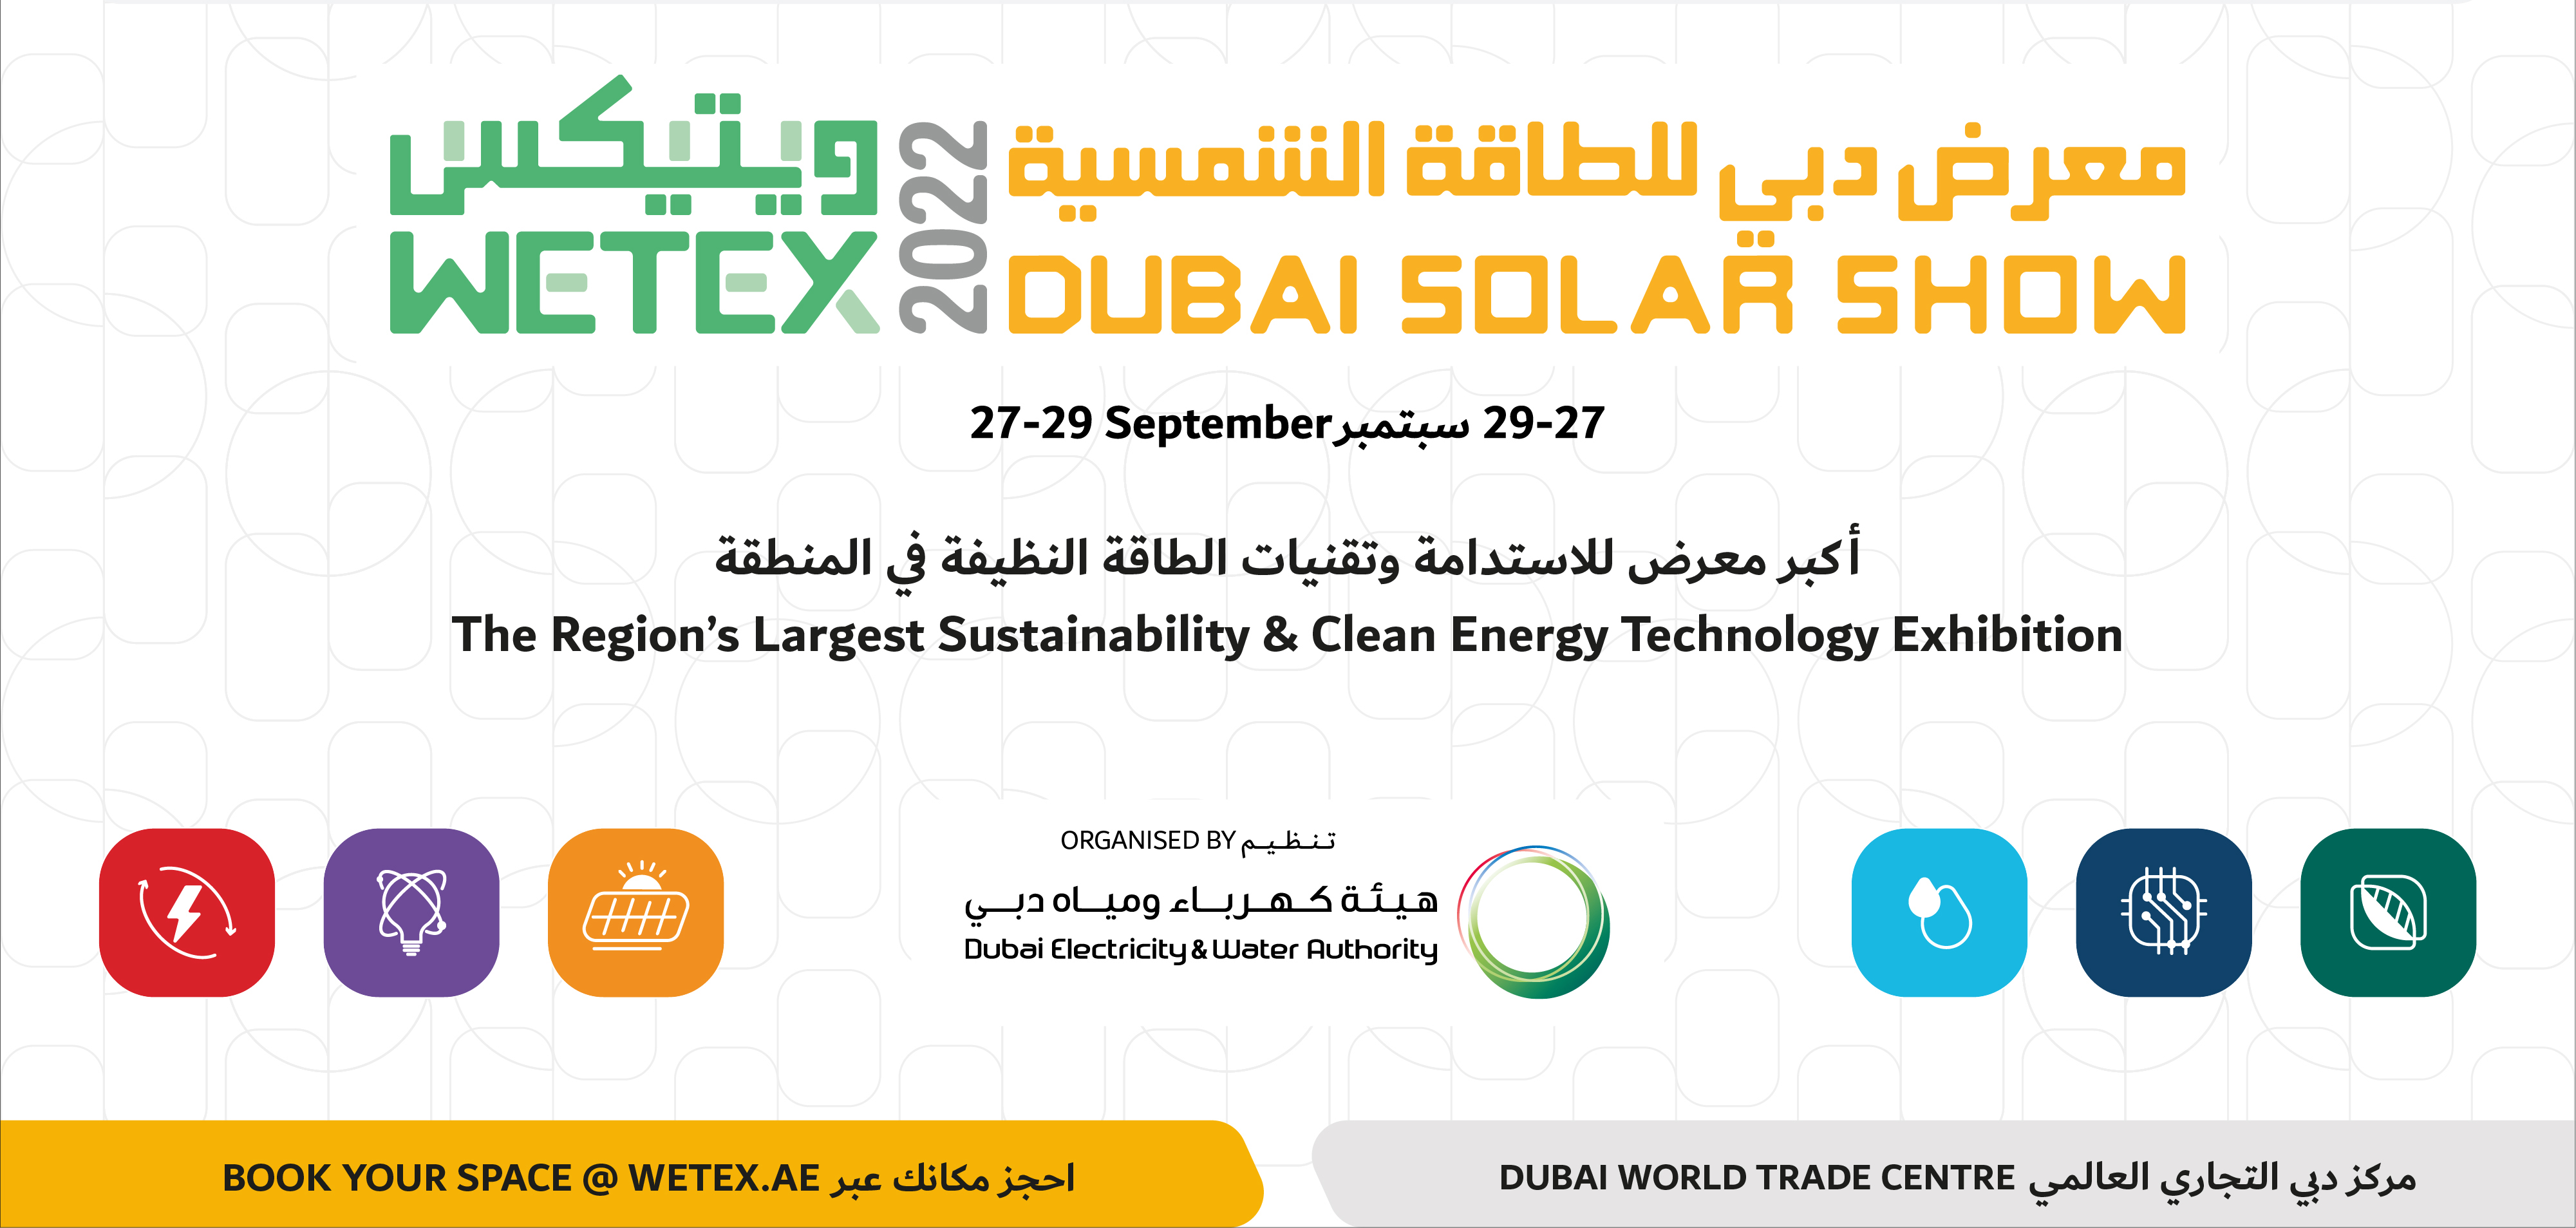 ستنظم هيئة كهرباء ومياه دبي WETEX و DSS 2022 في سبتمبر